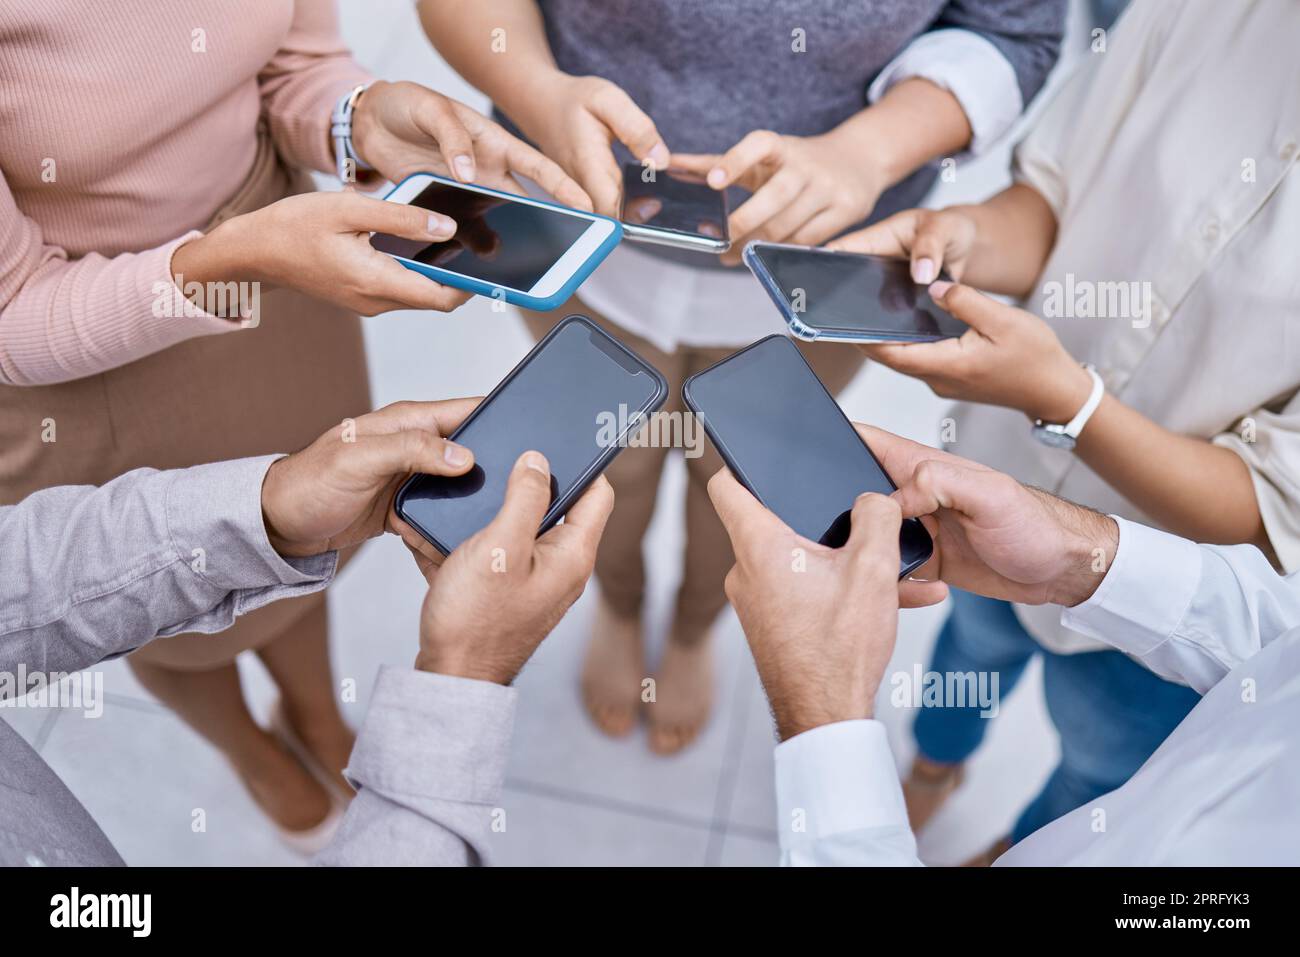 Globale Netzwerk- und Werbetechnologie 5G-Technologie durch gemeinsame Nutzung von Telefonkontakt und Online-Kommunikation. Digitale Teamzusammenarbeit bei Online-Marketing, Planung und Brainstorming Teamwork Stockfoto